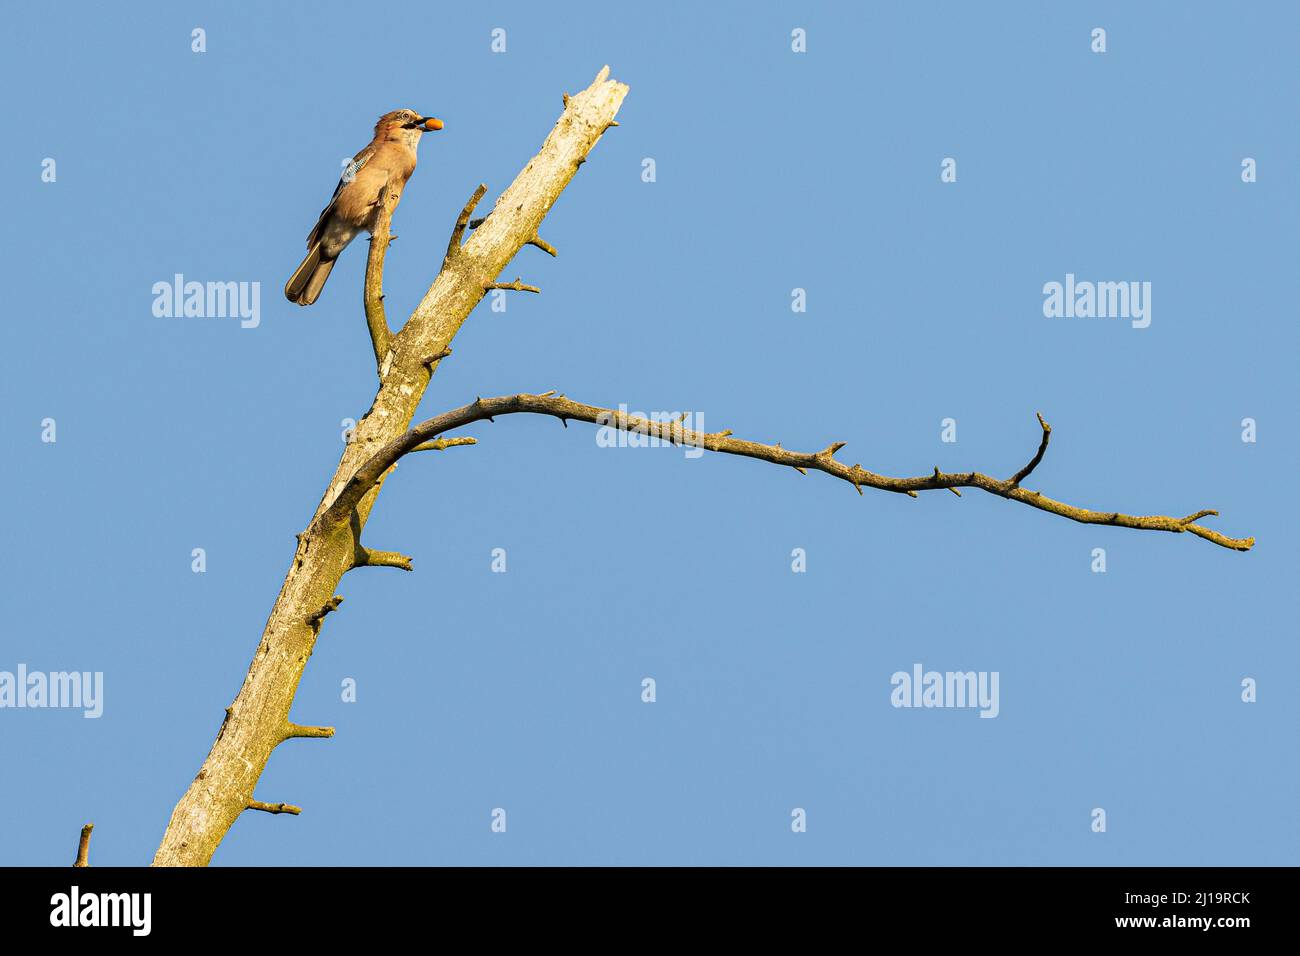 Eurasischer eichelhäher (Garrulus glandarius) mit Eichel im Schnabel auf einem toten Baum, JuodkrantÄ, Kurische Nehrung, Klaipeda, Litauen Stockfoto